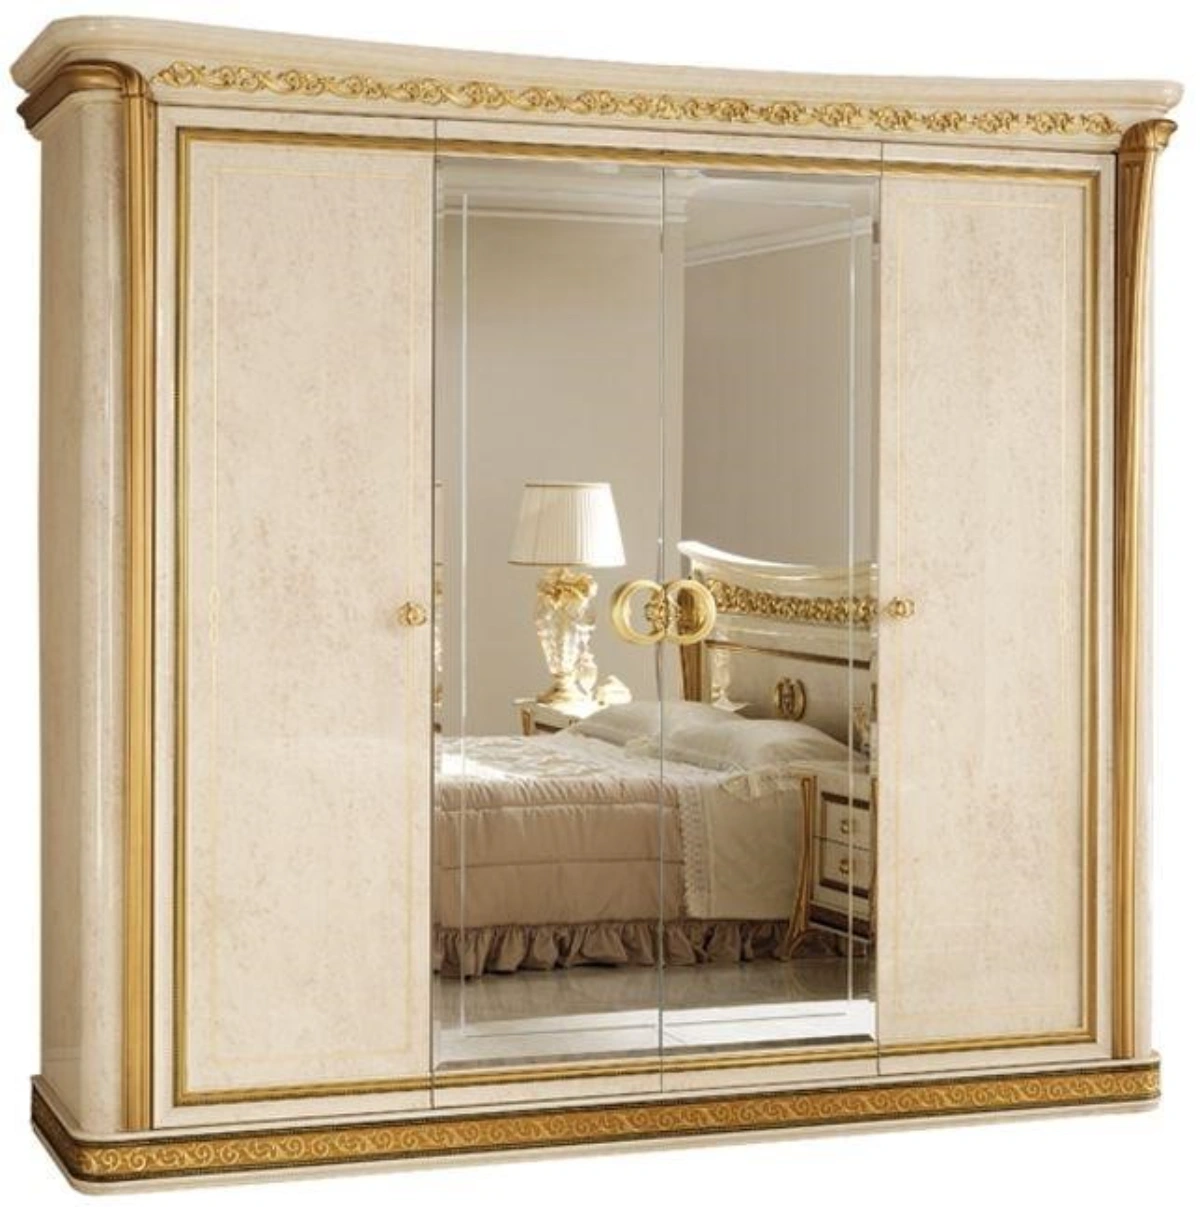 کمد دیواری کلاسیک با درب ریلی آینه ای و چوبی به رنگ سفید طلایی